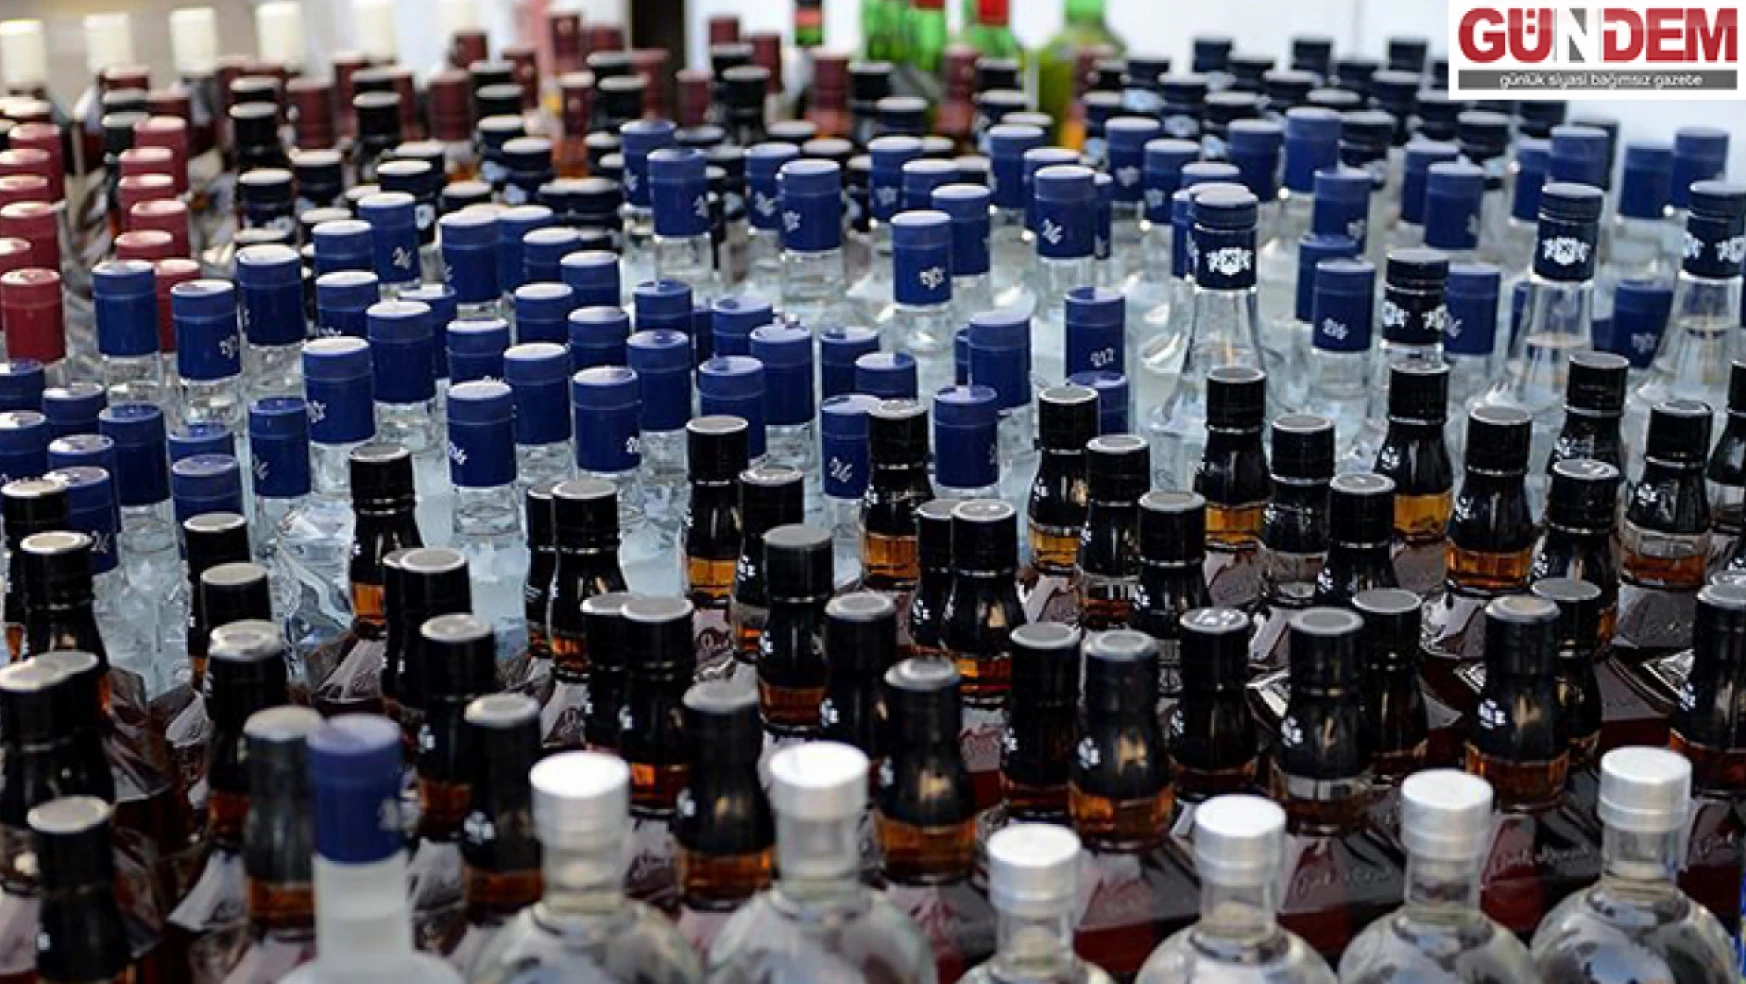 Edirne'de gümrük kaçağı 54 şişe içki ele geçirildi